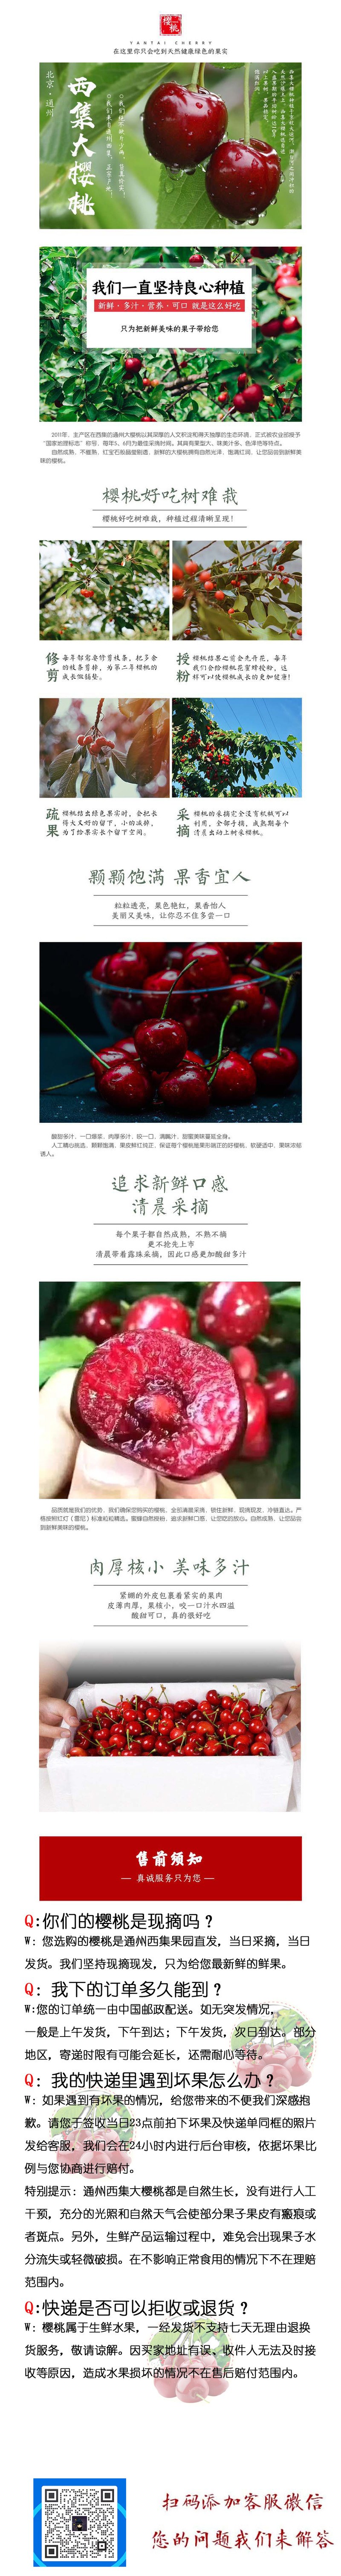 邮政农品 【北京馆】【京郊农品】通州西集樱桃